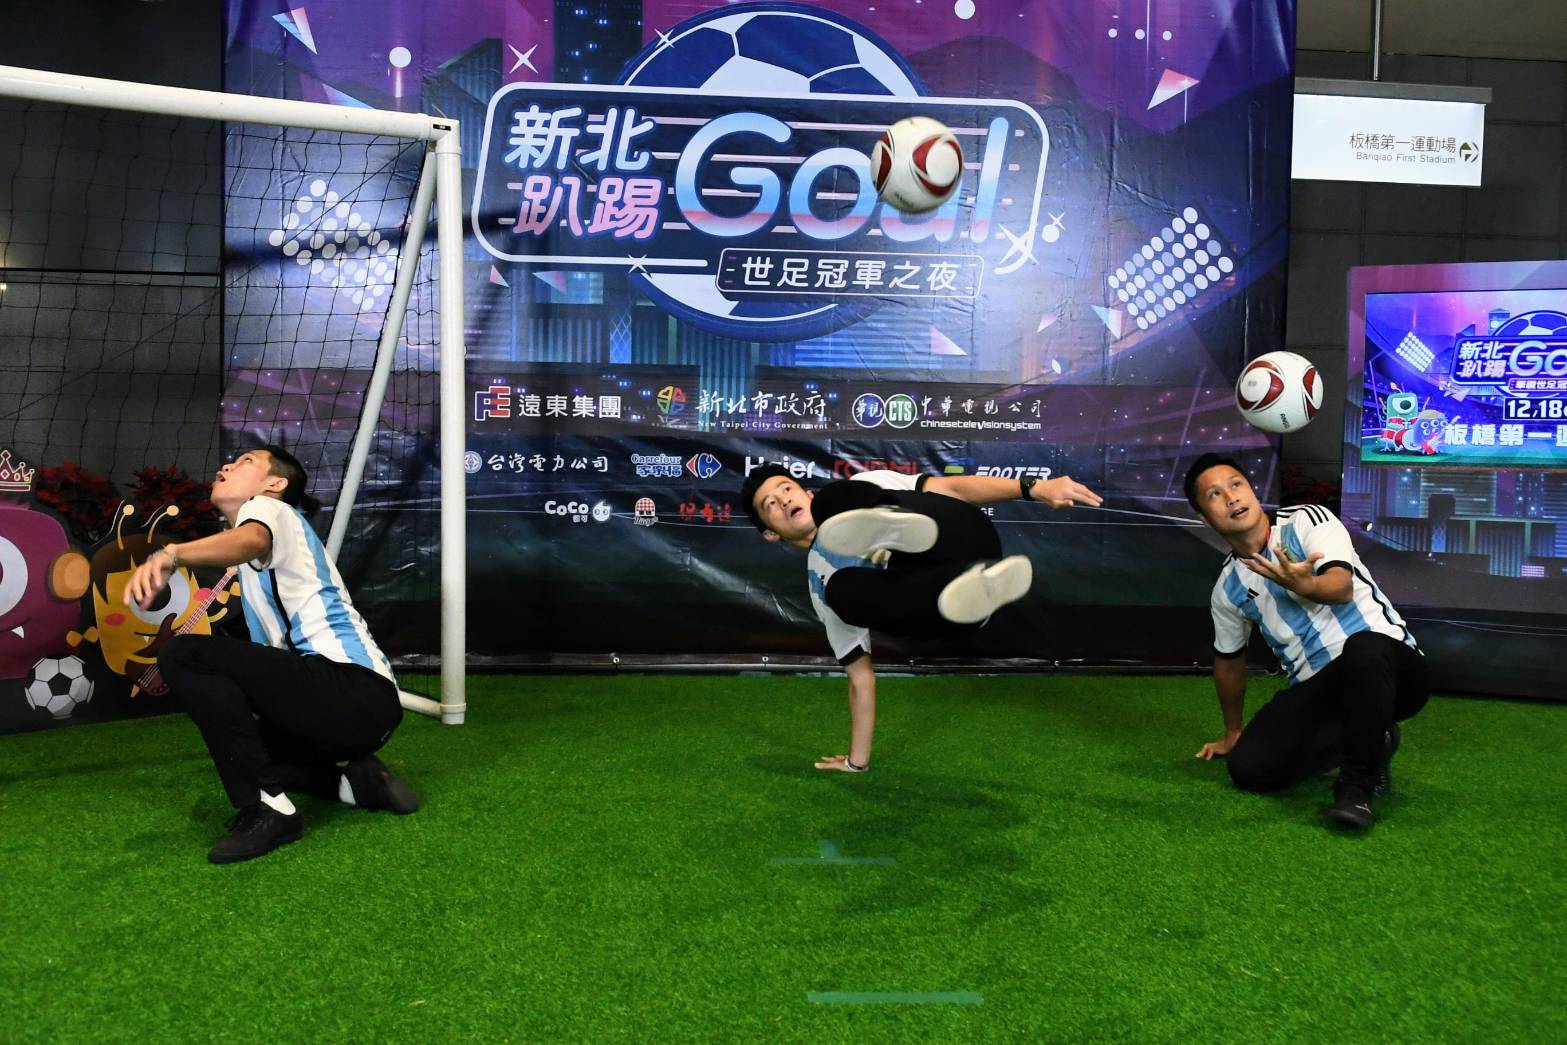 FKZ花式足球熱鬧開場，歡迎來華視世足冠軍之夜體驗.jpg